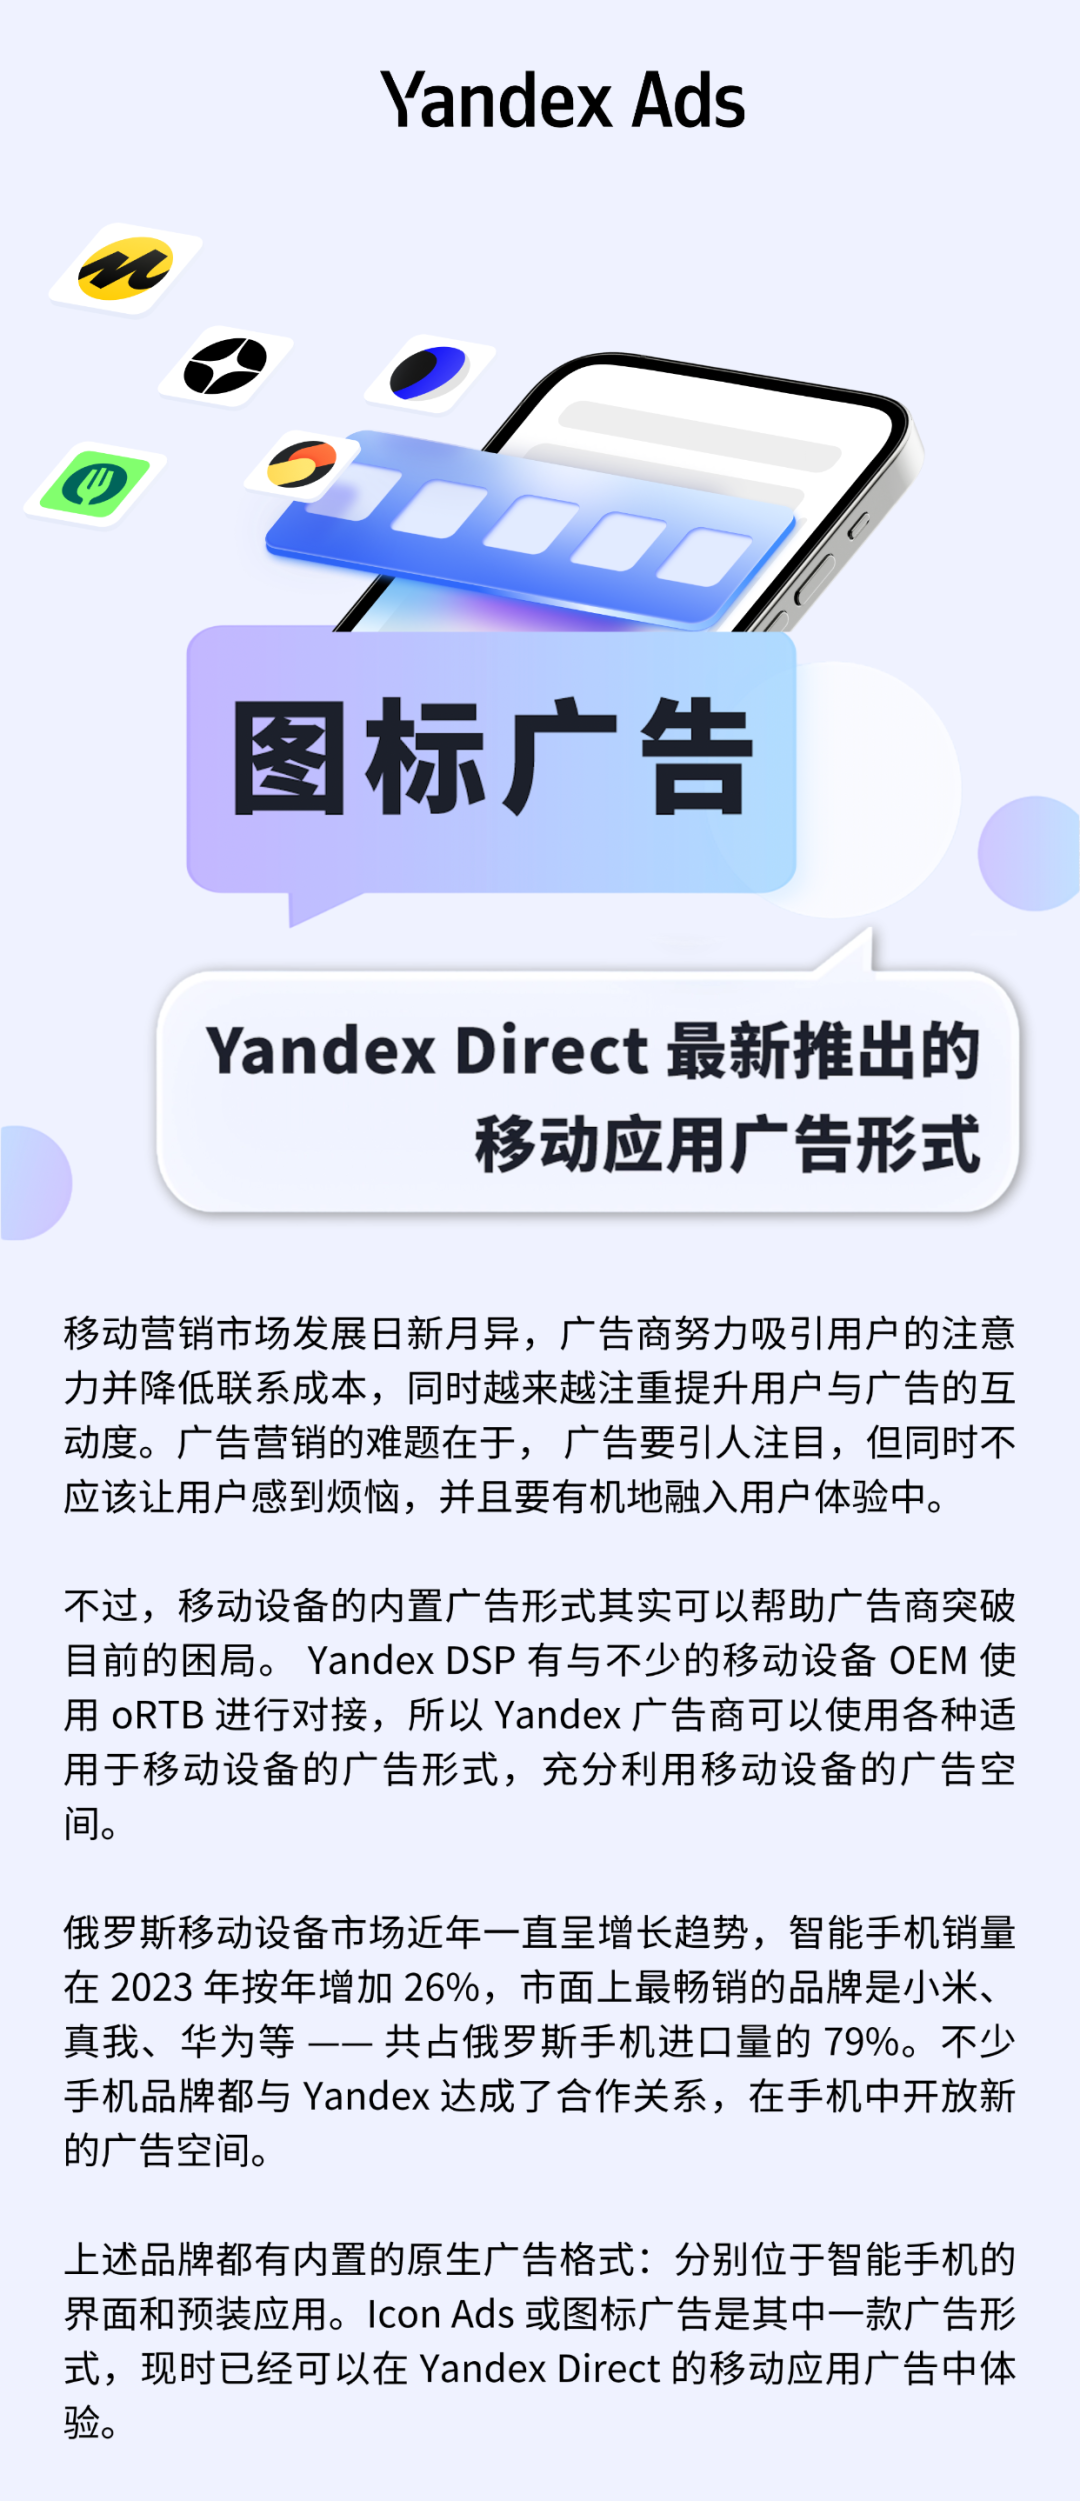 Icon ads（图标广告） —— 在 Yandex Direct 为推广应用程序可投放的新广告形式